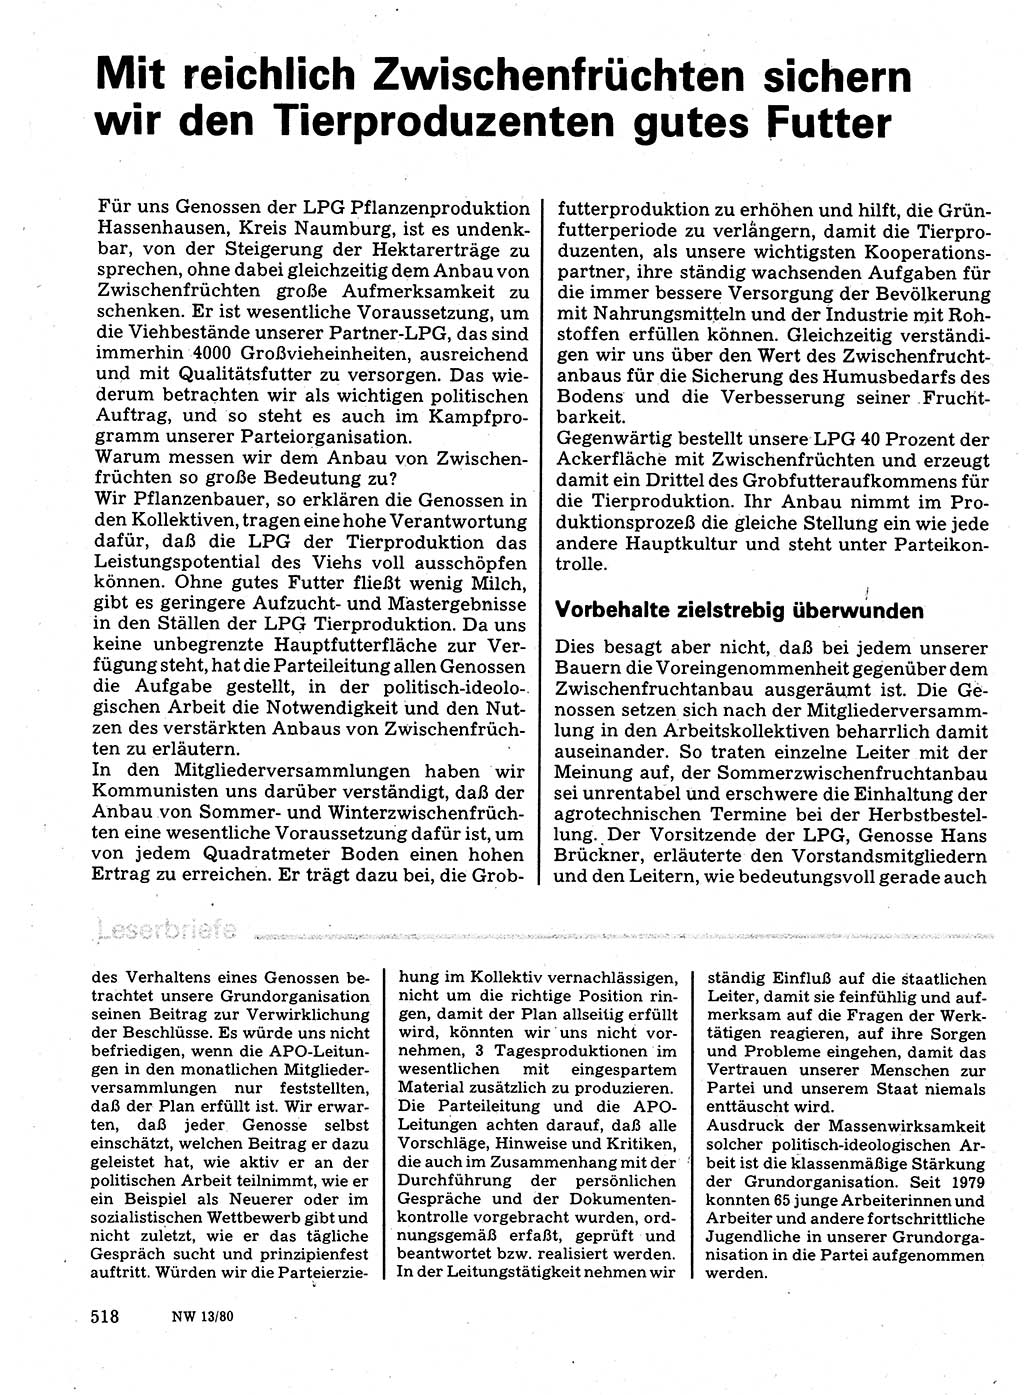 Neuer Weg (NW), Organ des Zentralkomitees (ZK) der SED (Sozialistische Einheitspartei Deutschlands) für Fragen des Parteilebens, 35. Jahrgang [Deutsche Demokratische Republik (DDR)] 1980, Seite 518 (NW ZK SED DDR 1980, S. 518)